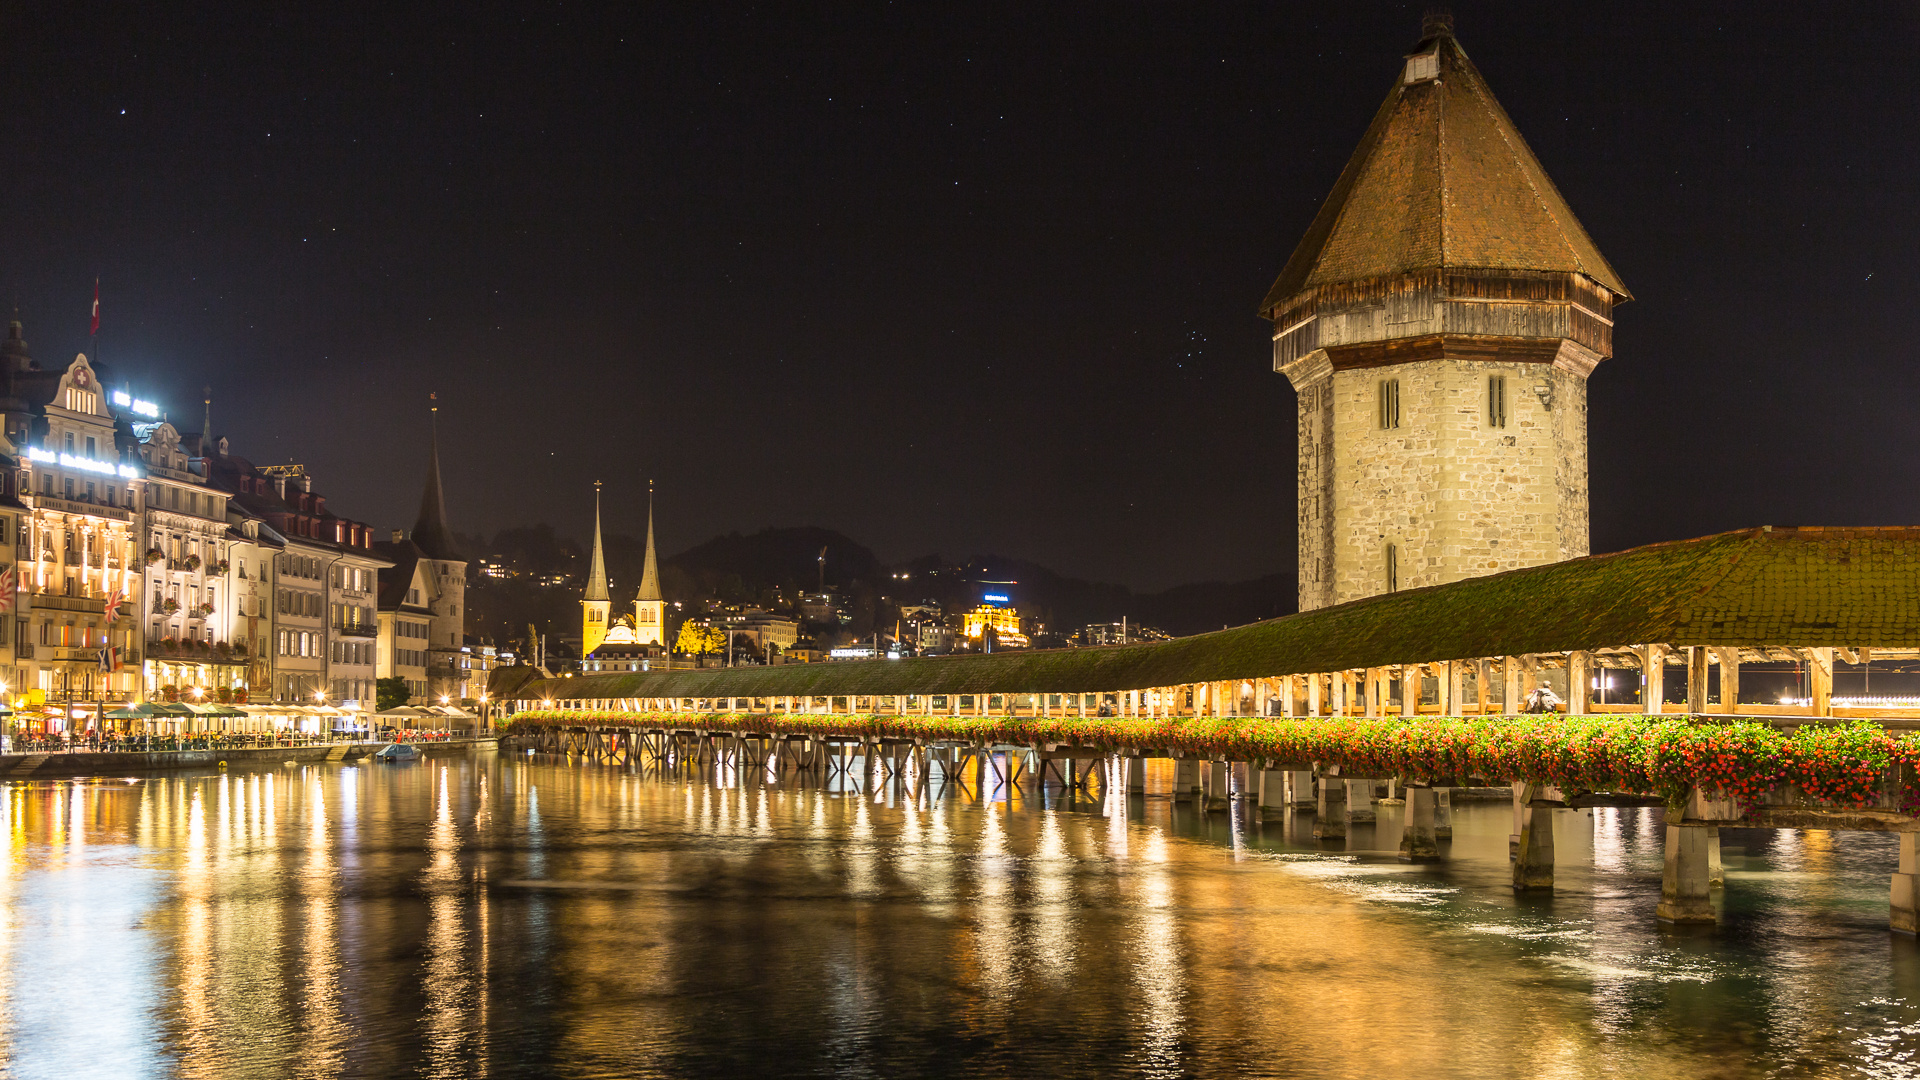 Luzern: Kappellbrücke und Wasserturm nächtlich beleuchtet